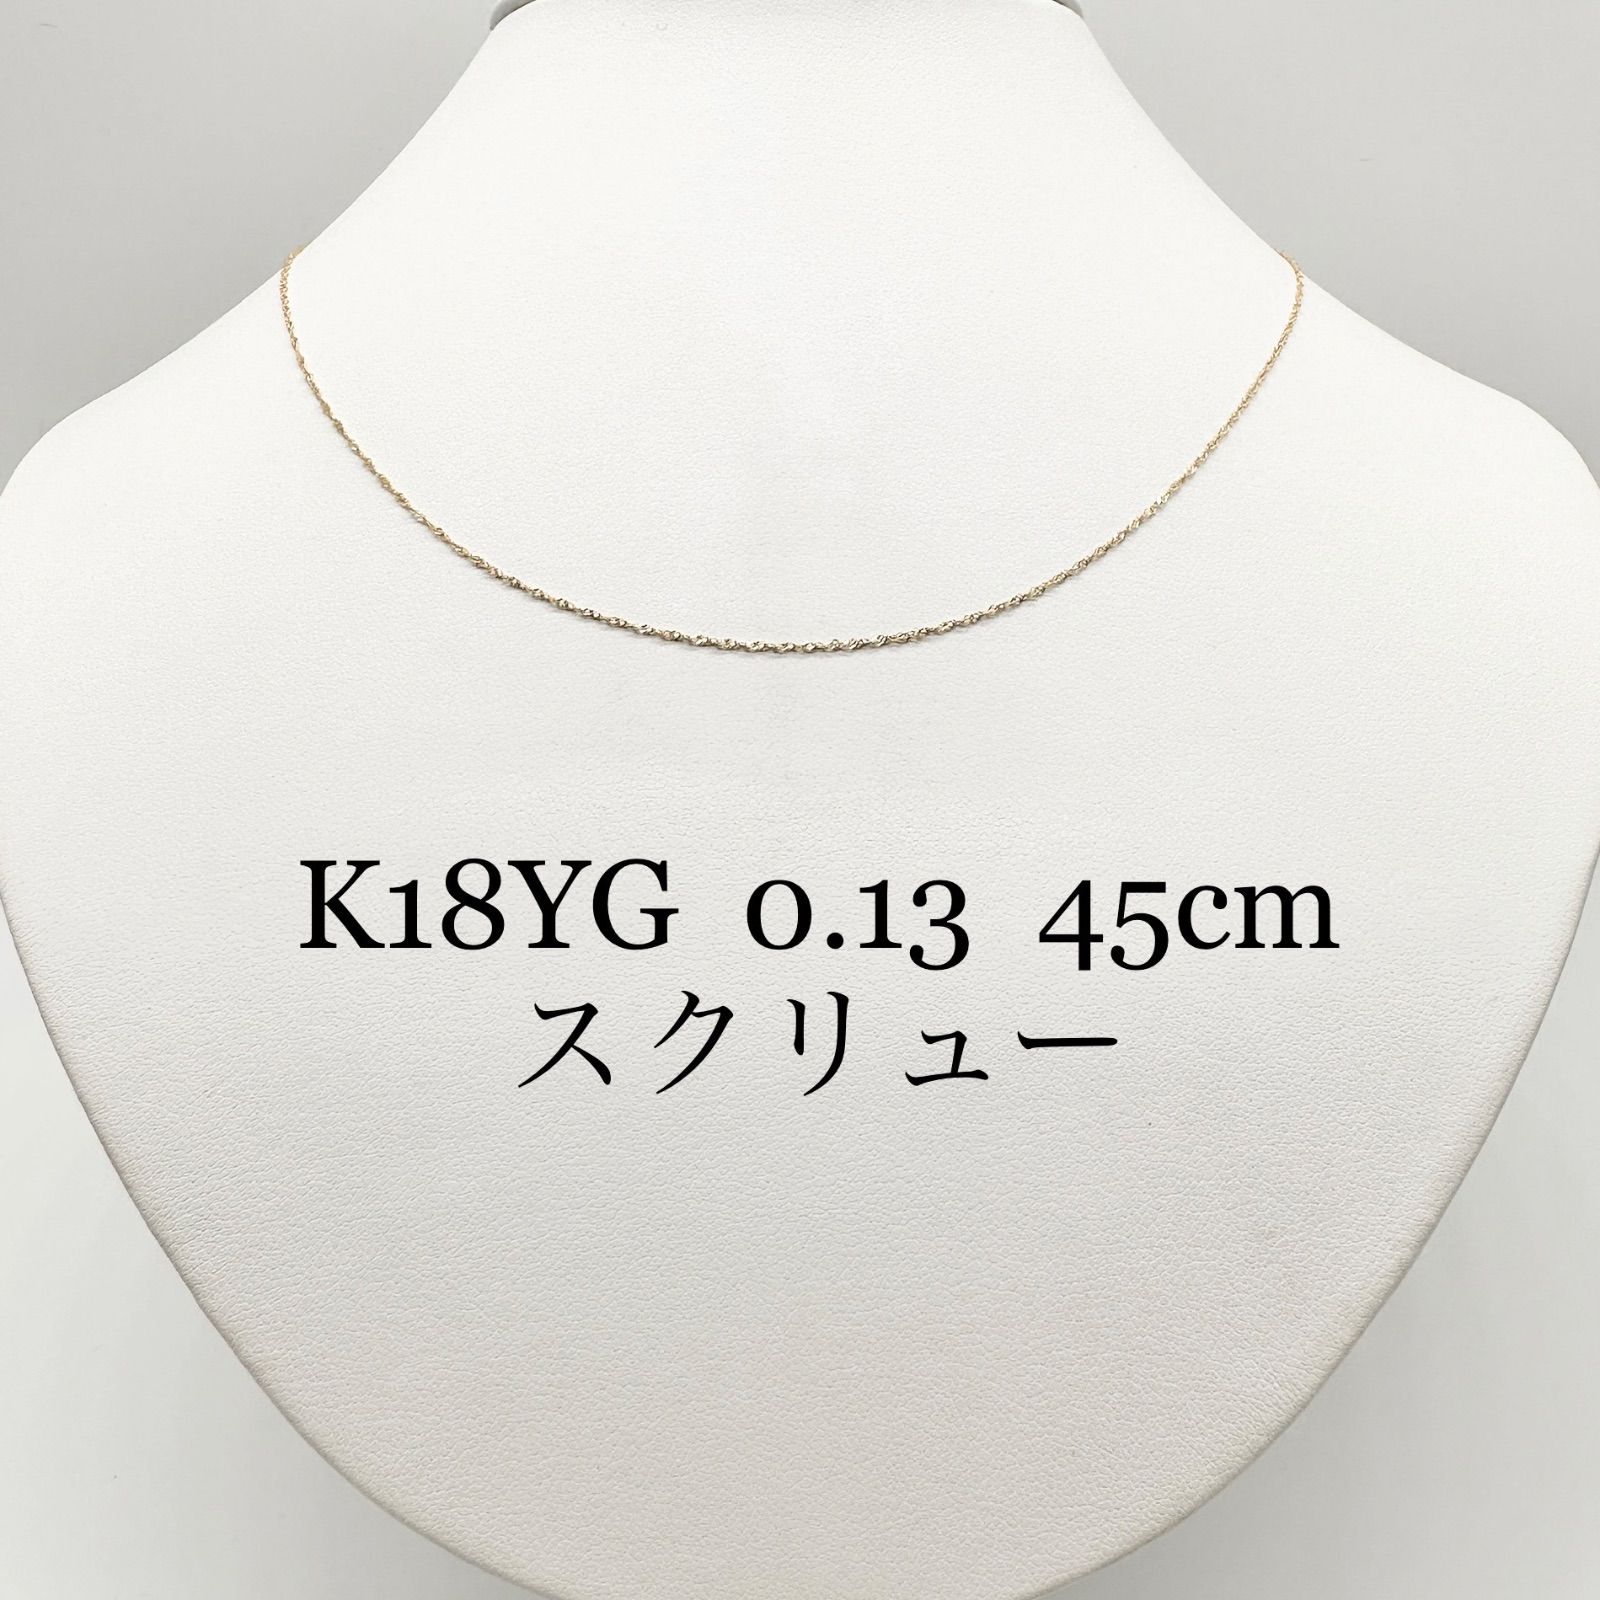 アクセサリー新品❗️ K18YG 50cm☆ペタルチェーン☆ スライドネックレス